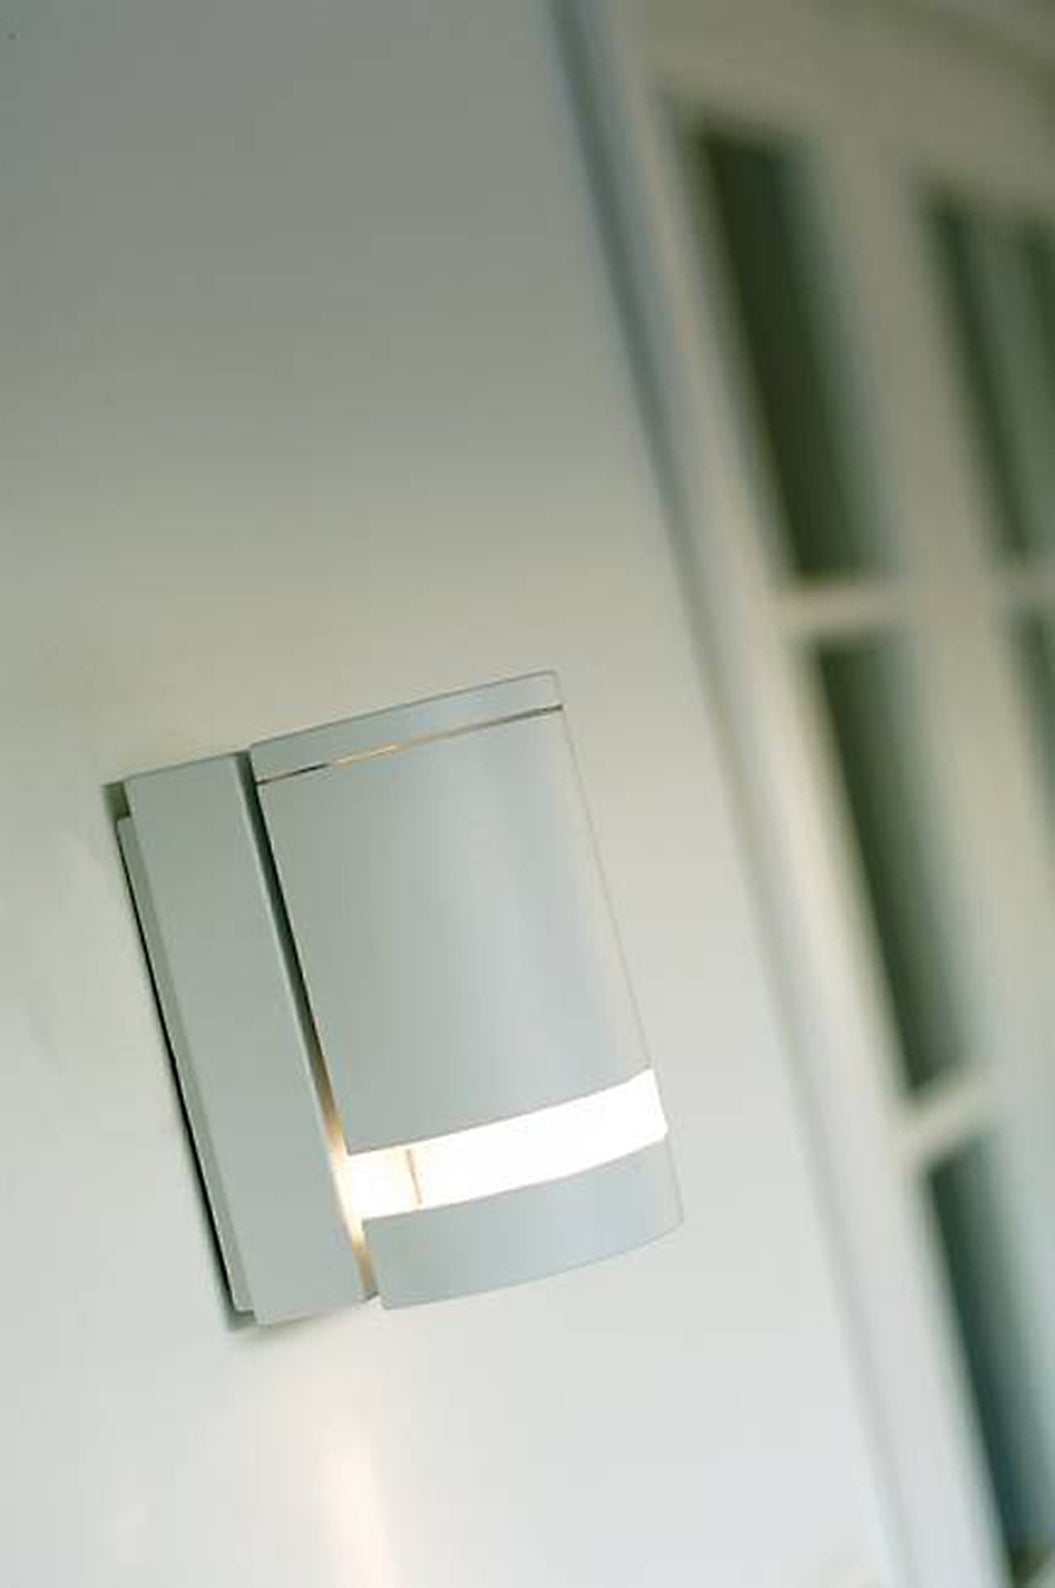 Nordlux Focus væglampe - 1xGU10 - hvid